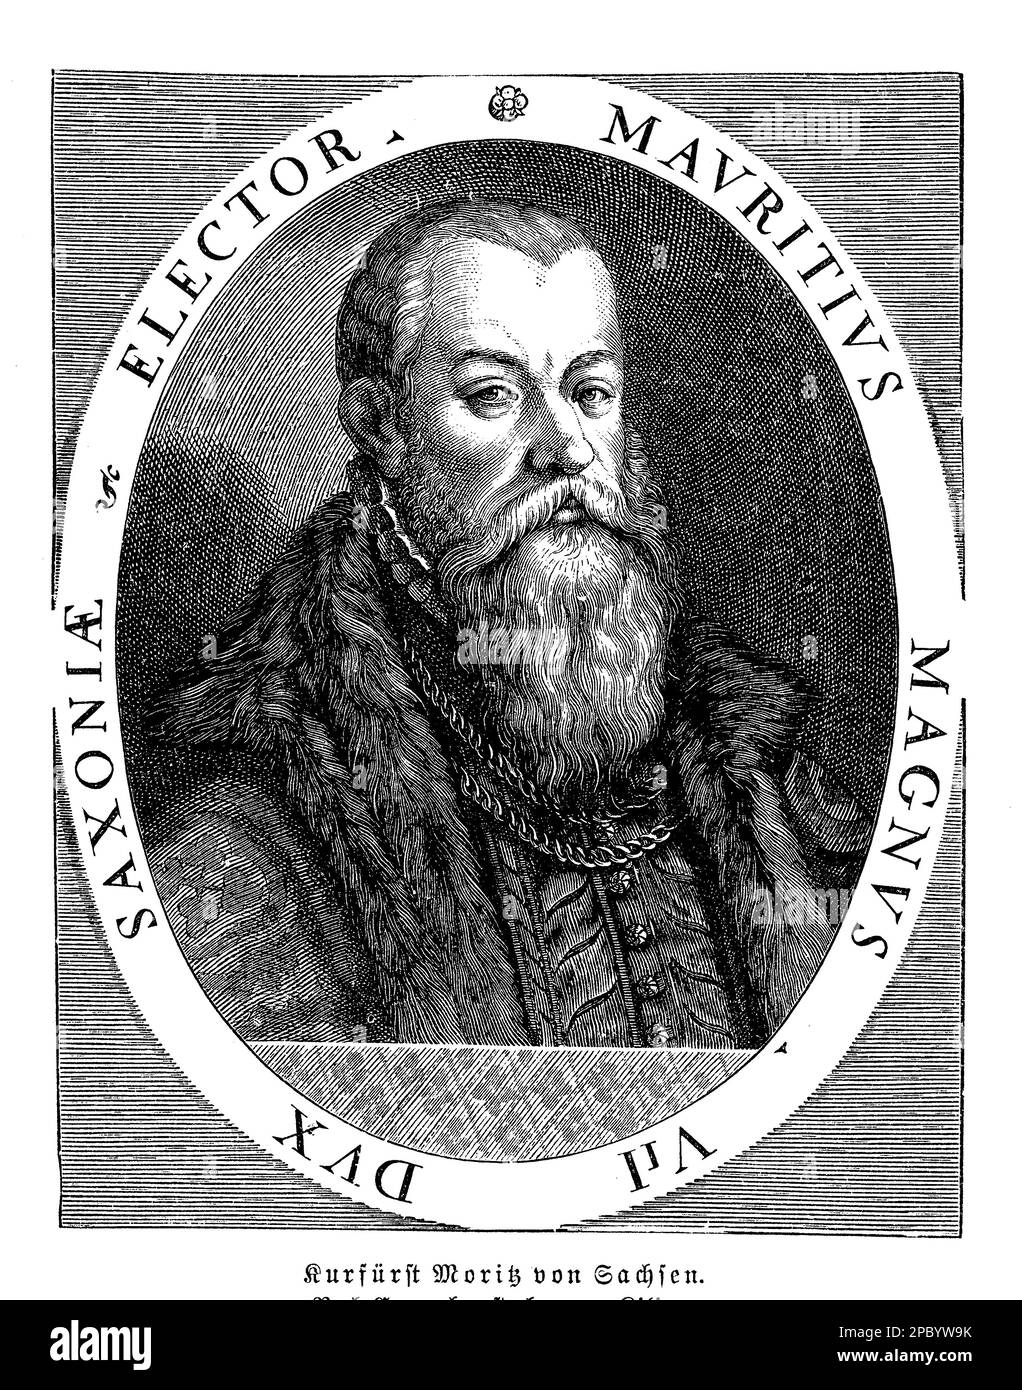 Kurürst Moritz von Sachsen était un prince allemand de 16th ans et un chef militaire qui a joué un rôle important dans la réforme protestante. Il a changé de camp pendant la guerre de Schmalkaldic, en battant ses anciens alliés, et a gagné le contrôle de l'électorat de Saxe. Banque D'Images